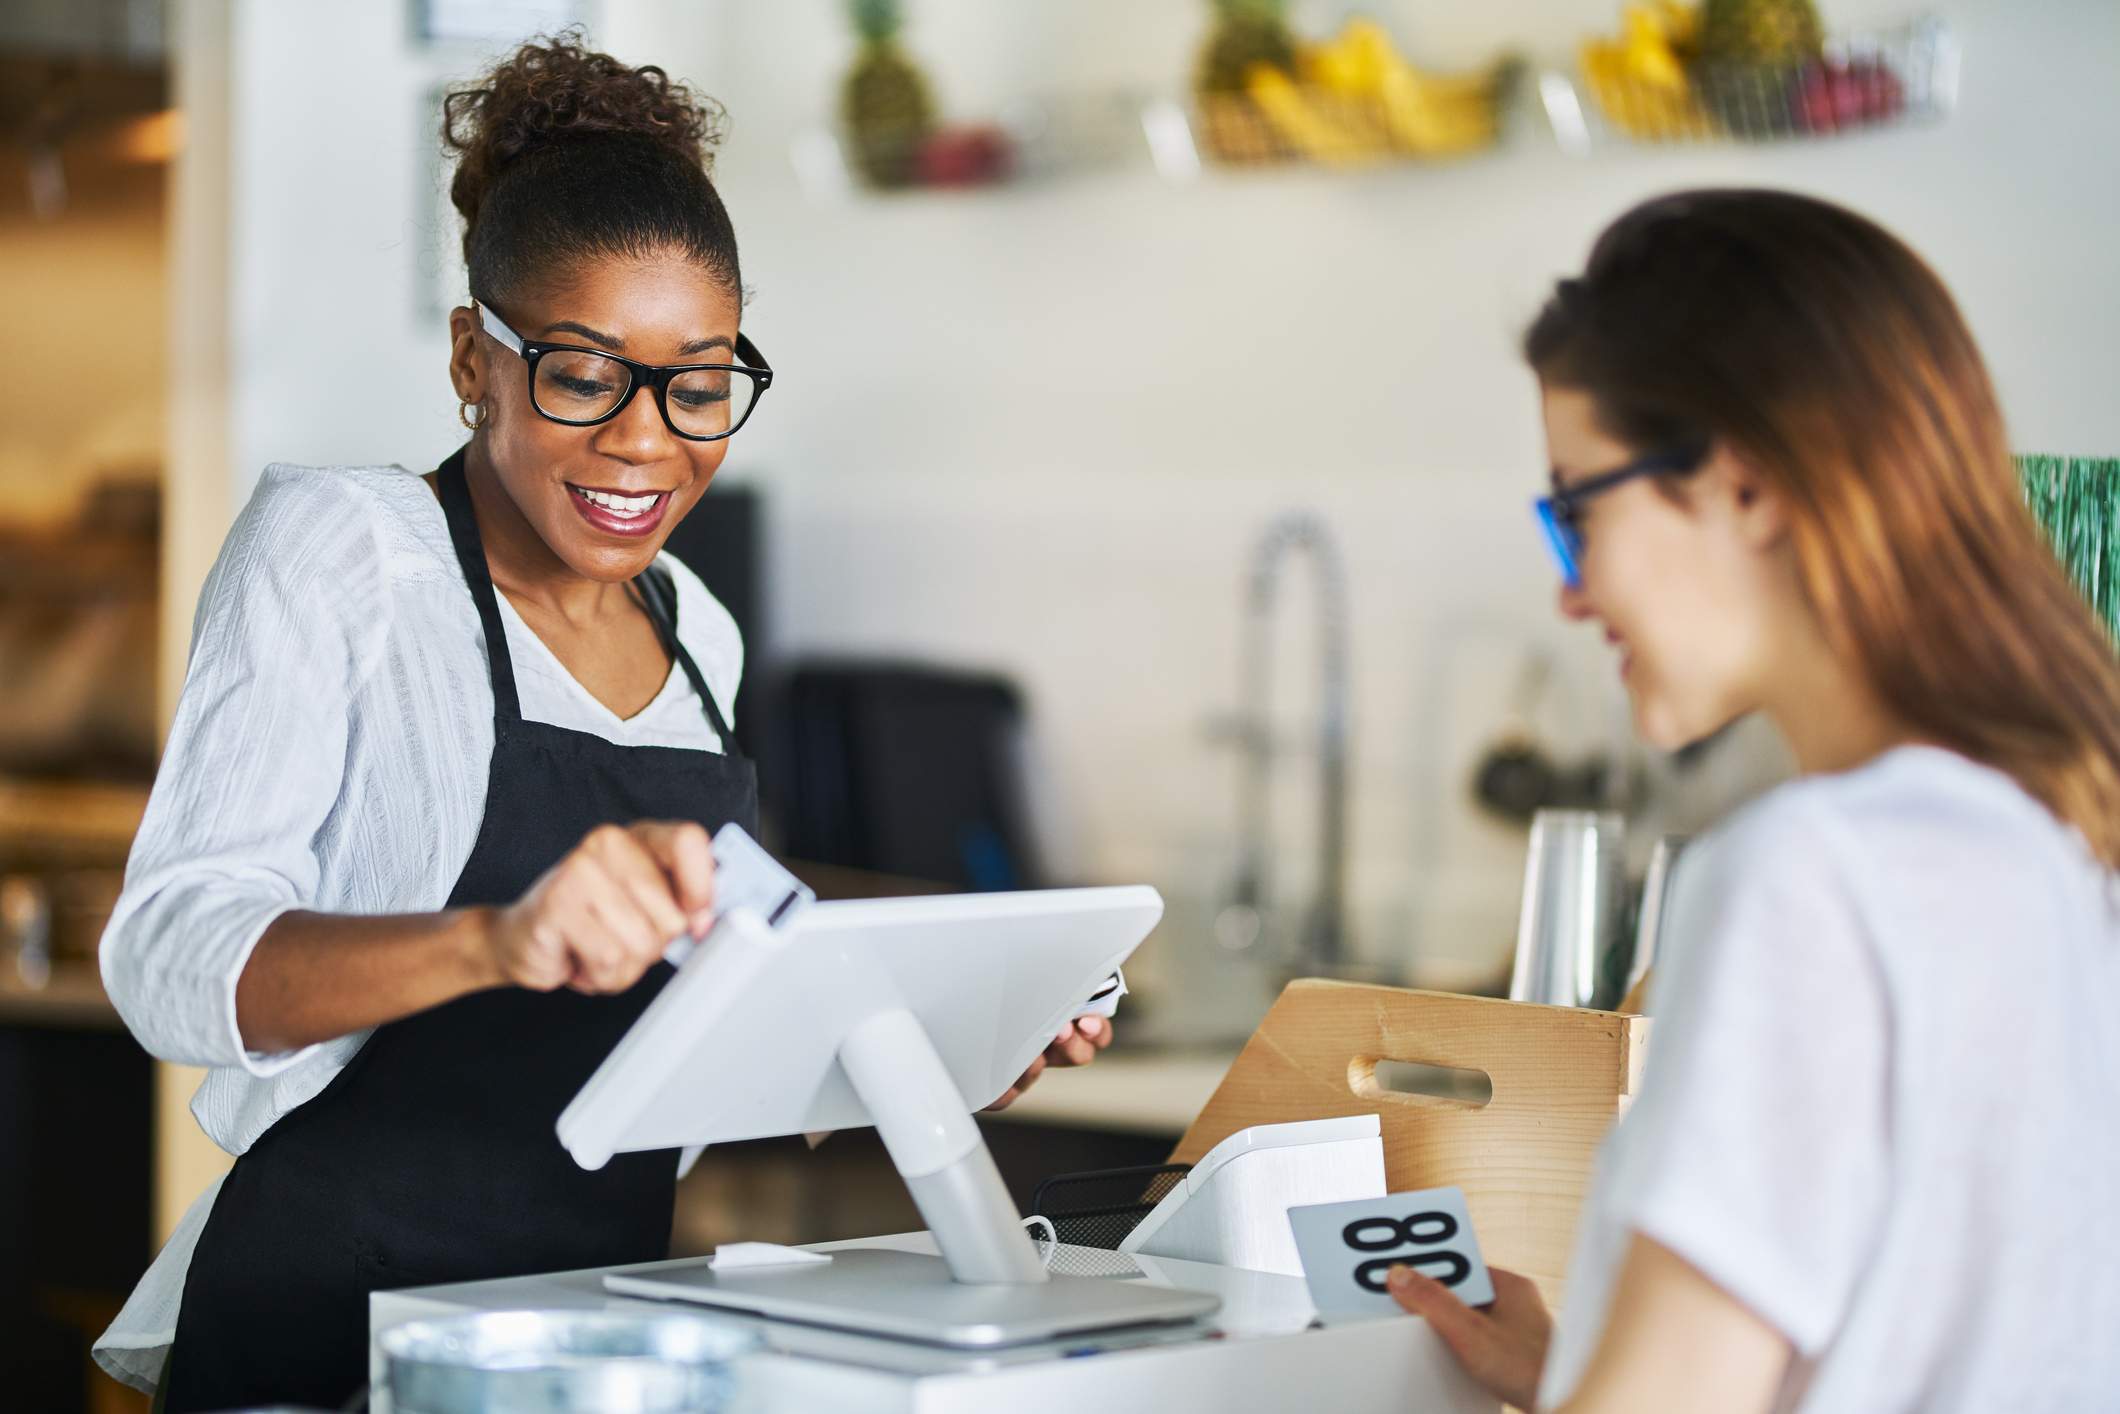 La imagen muestra a una mesera con camisa blanca, delantal negro y lentes con montura negra que pasa la tarjeta de crédito de una clienta en una terminal de pago. La clienta sonríe mientras espera. 